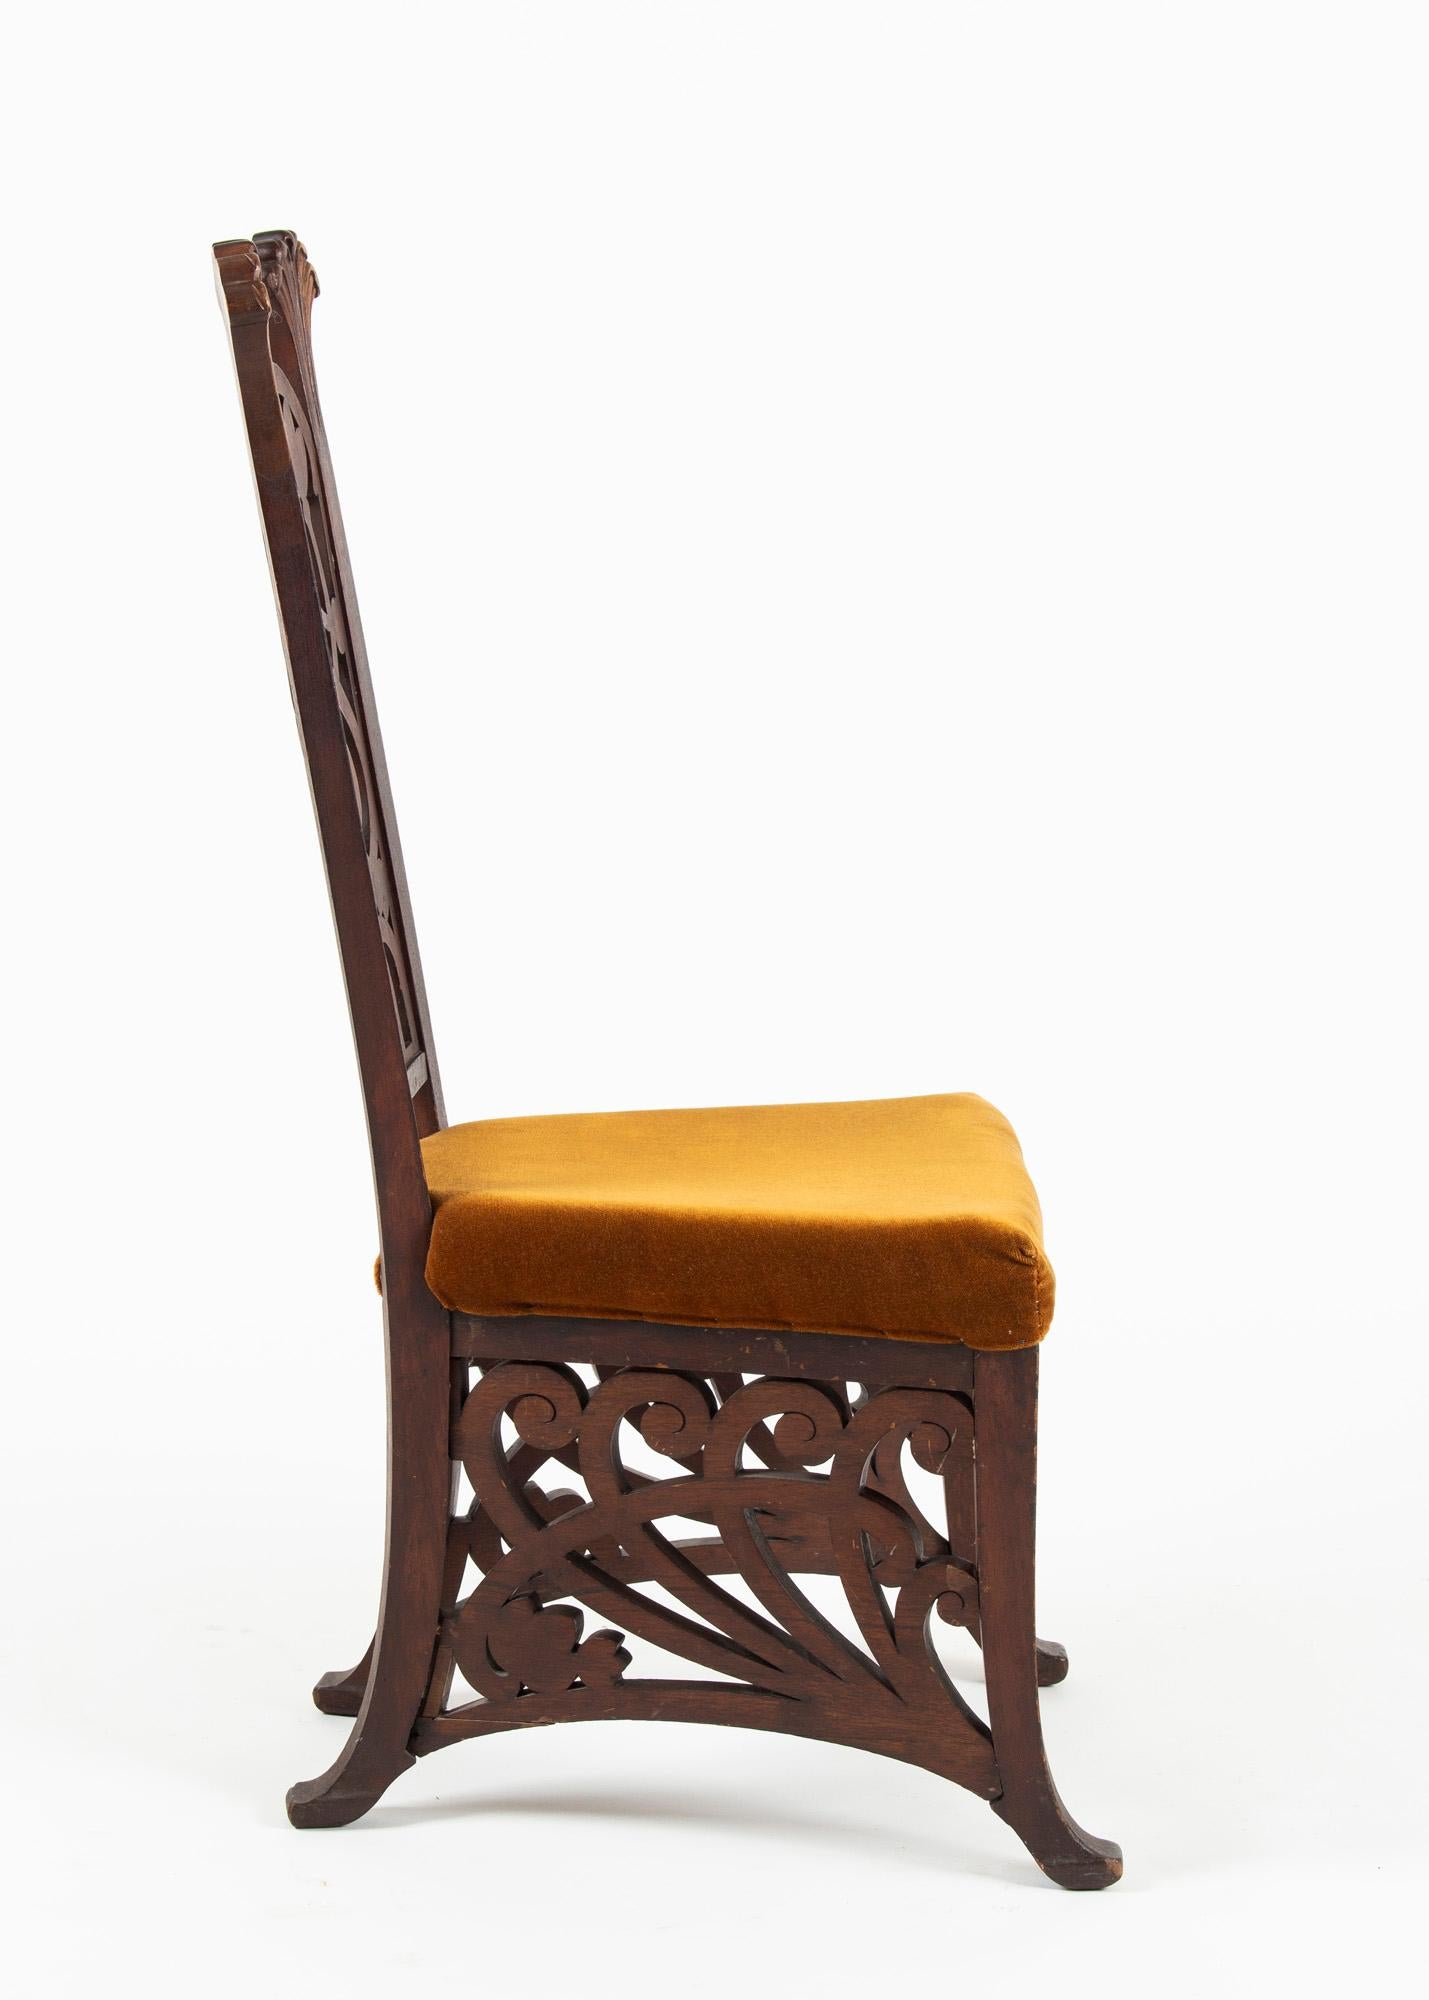 Unique Rippl-Rónai József Art Nouveau Chairs, circa 1900s For Sale 8